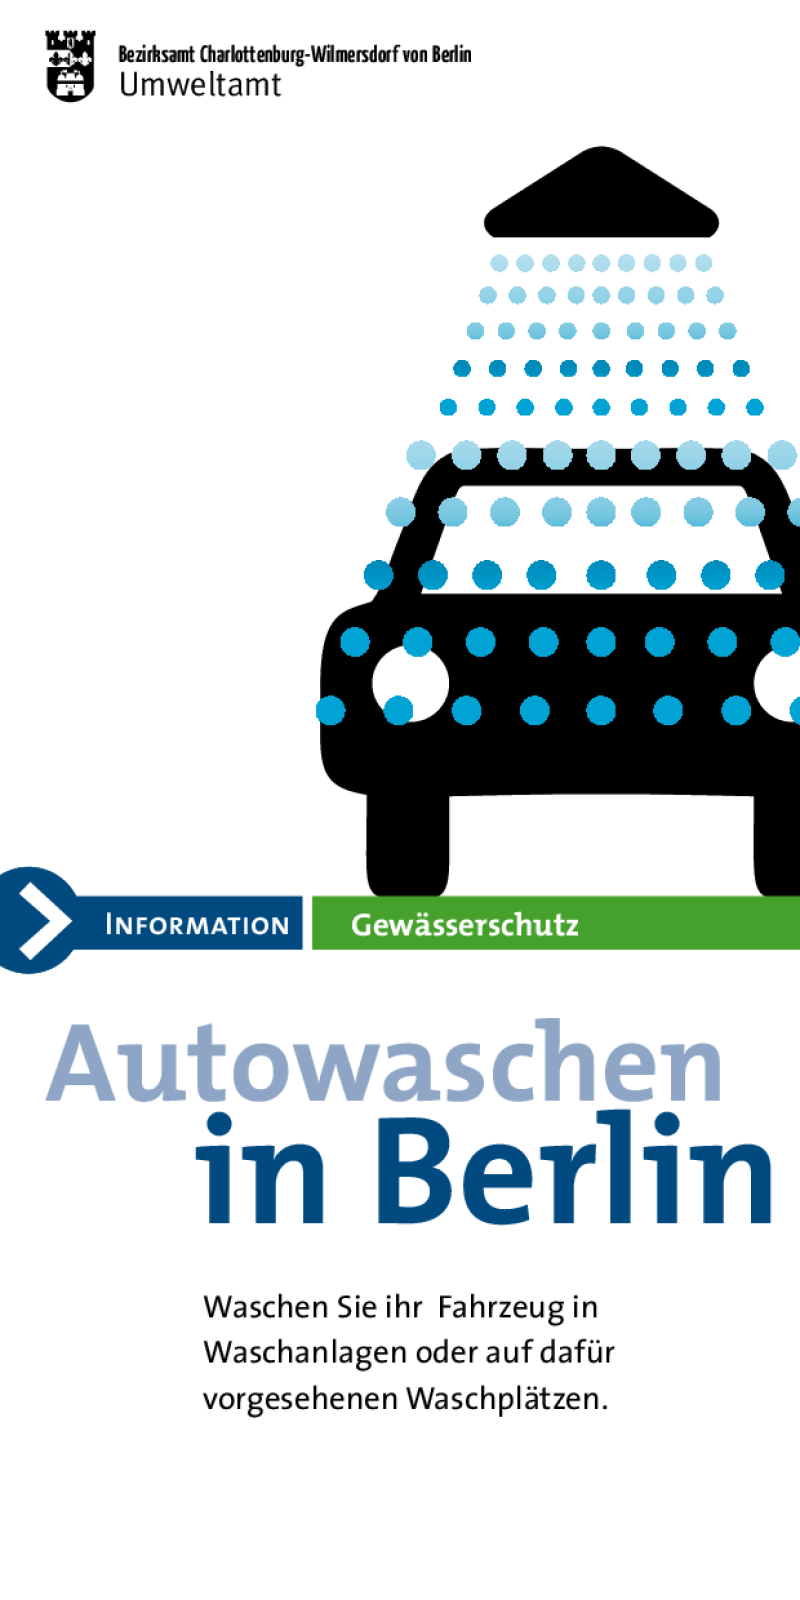 Autowaschen in Berlin